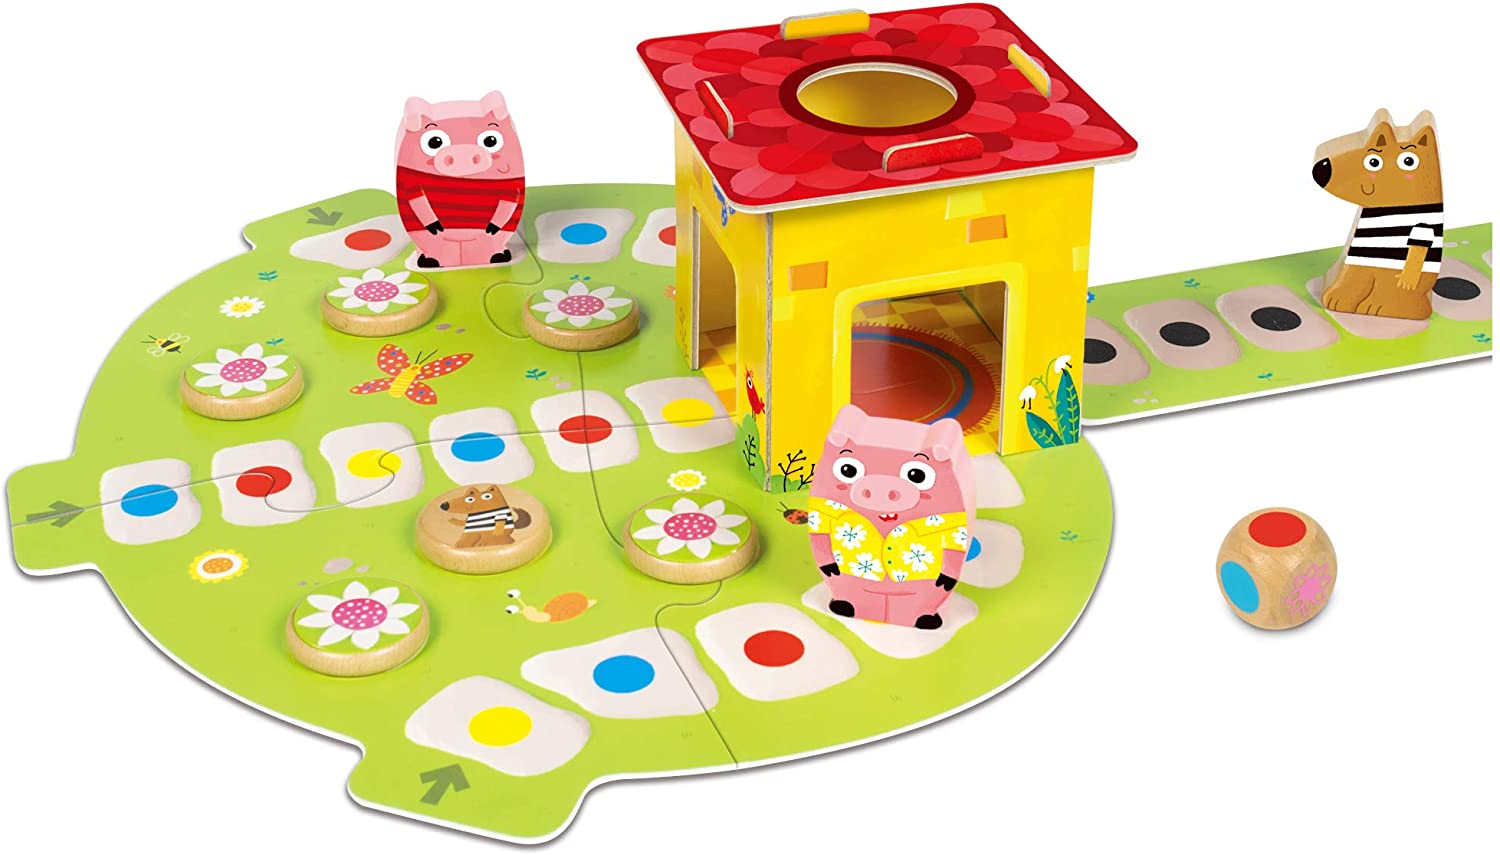 Galt Toys - Jogo de tabuleiro para crianças, maiores de 3 anos, 1-4 jo